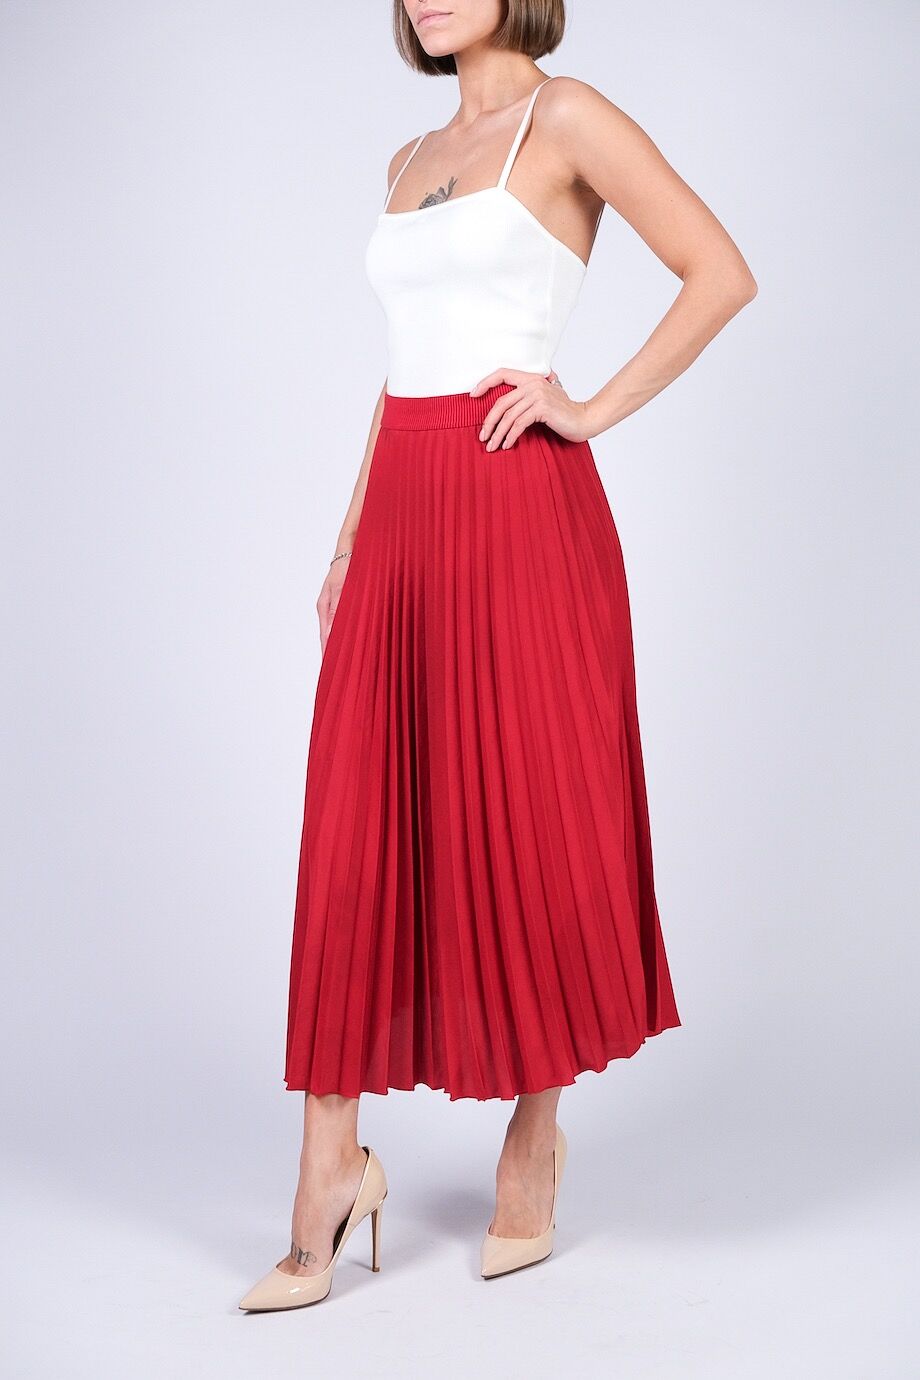 image 1 Плиссированная юбка красного цвета